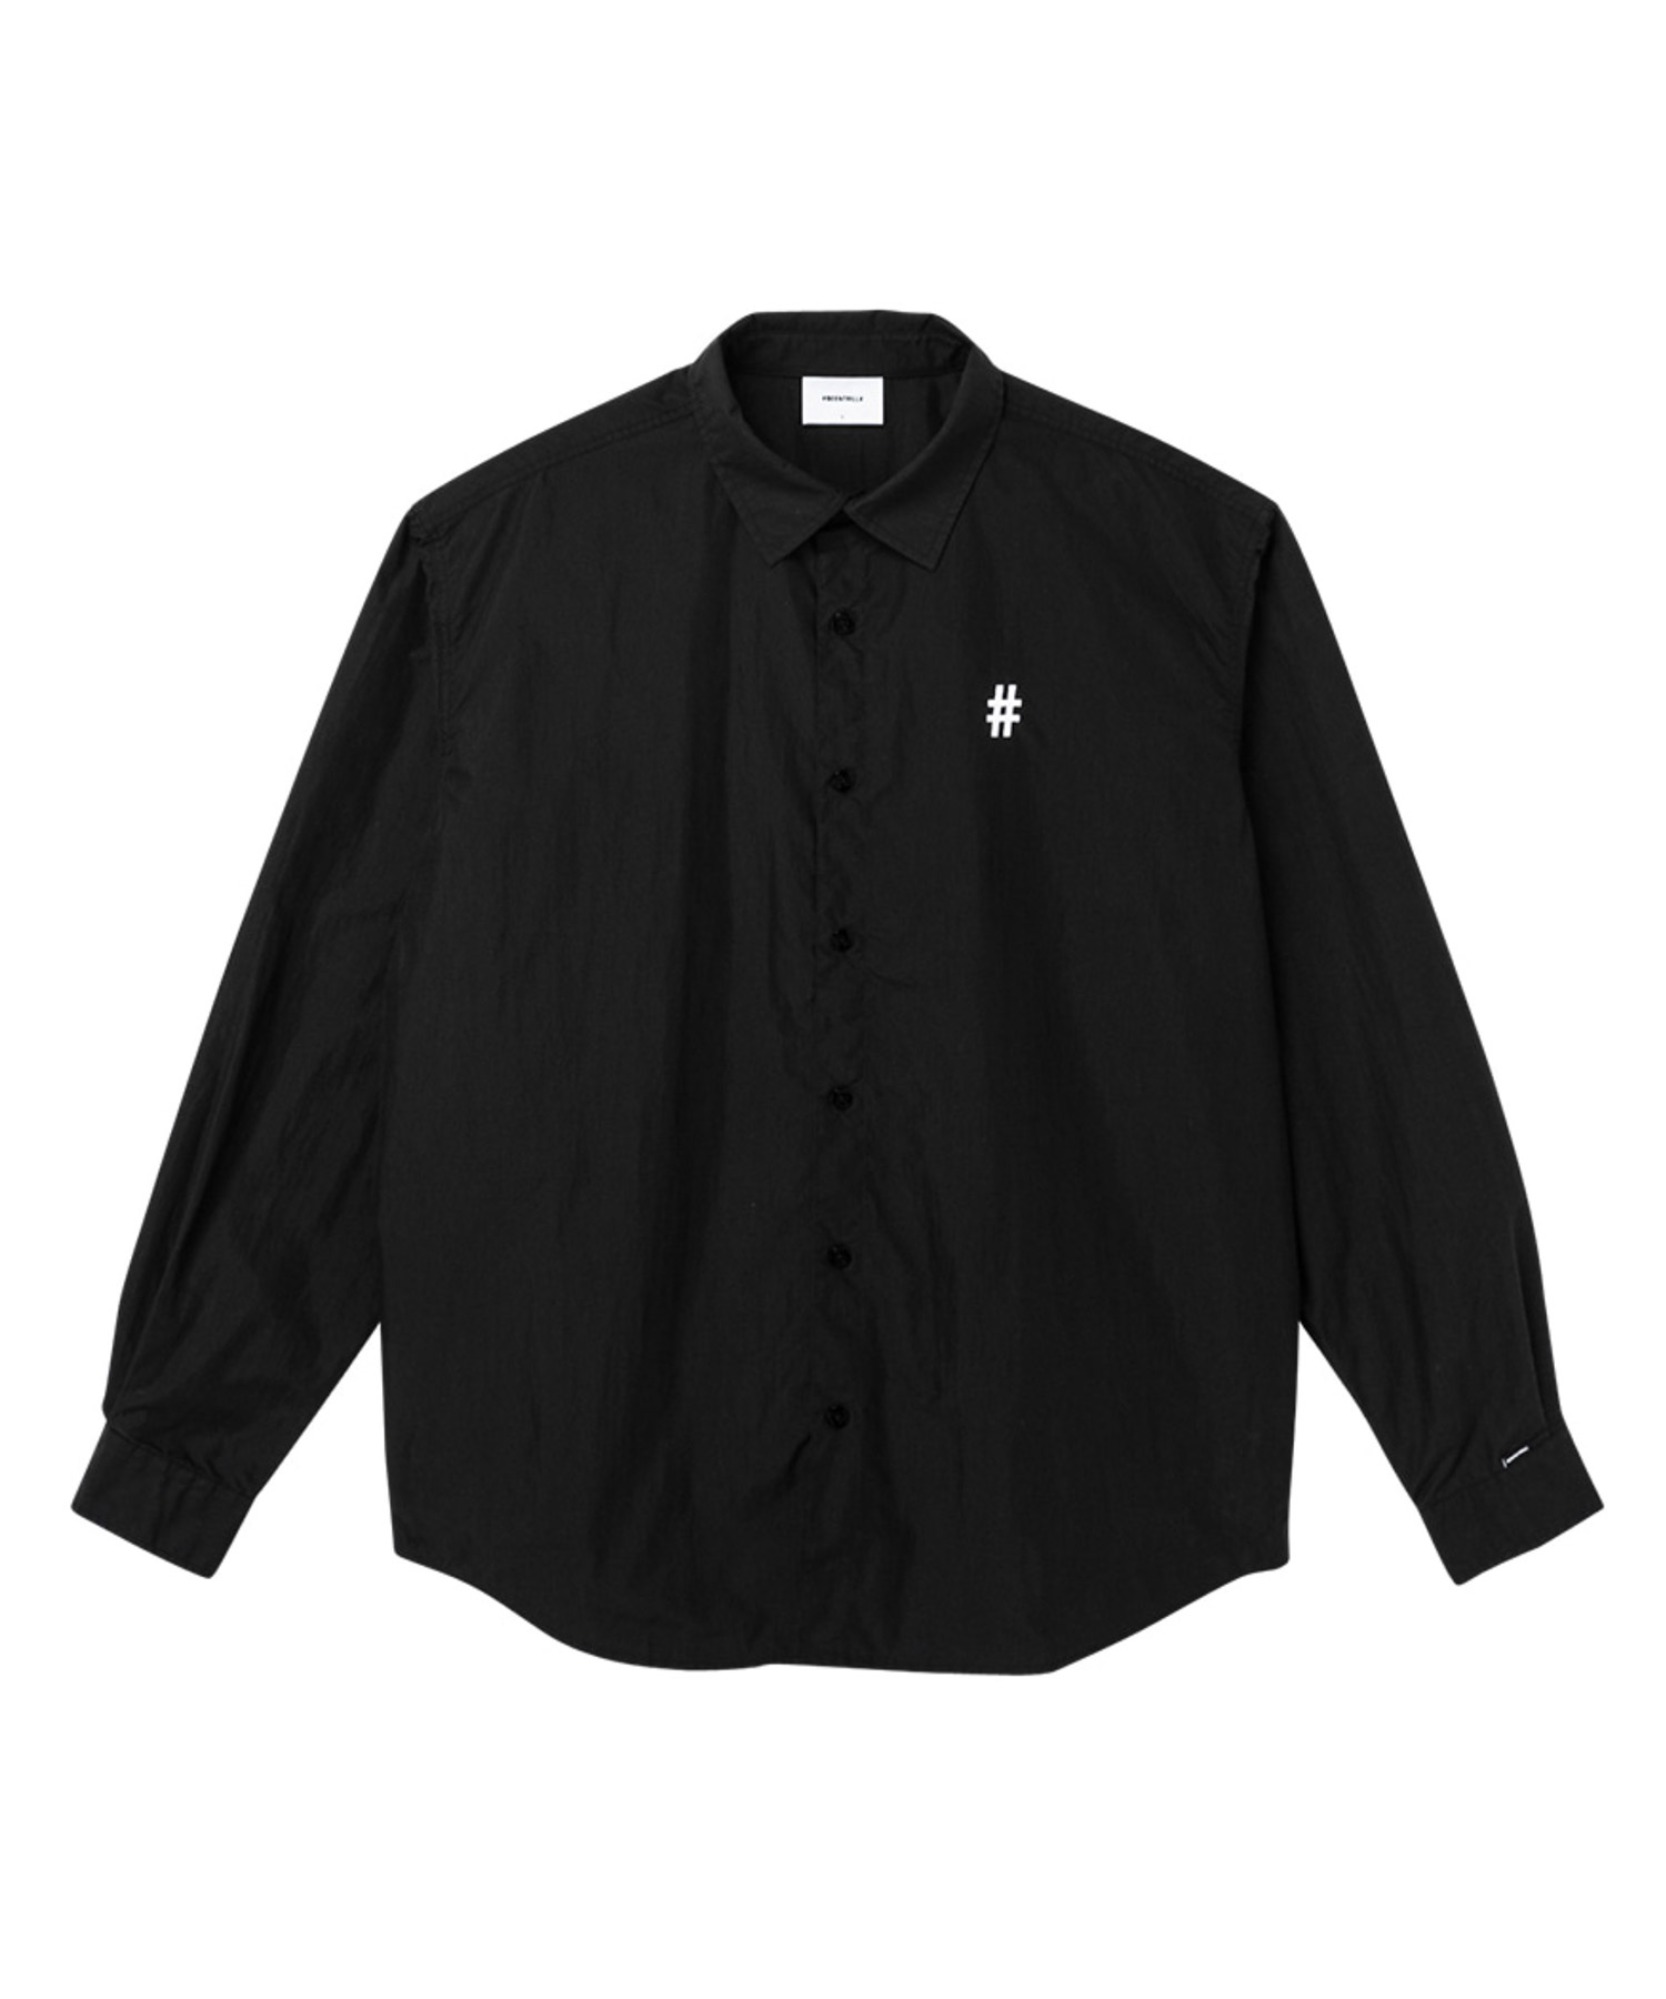 레터링 백 로고 오버핏 셔츠(블랙)